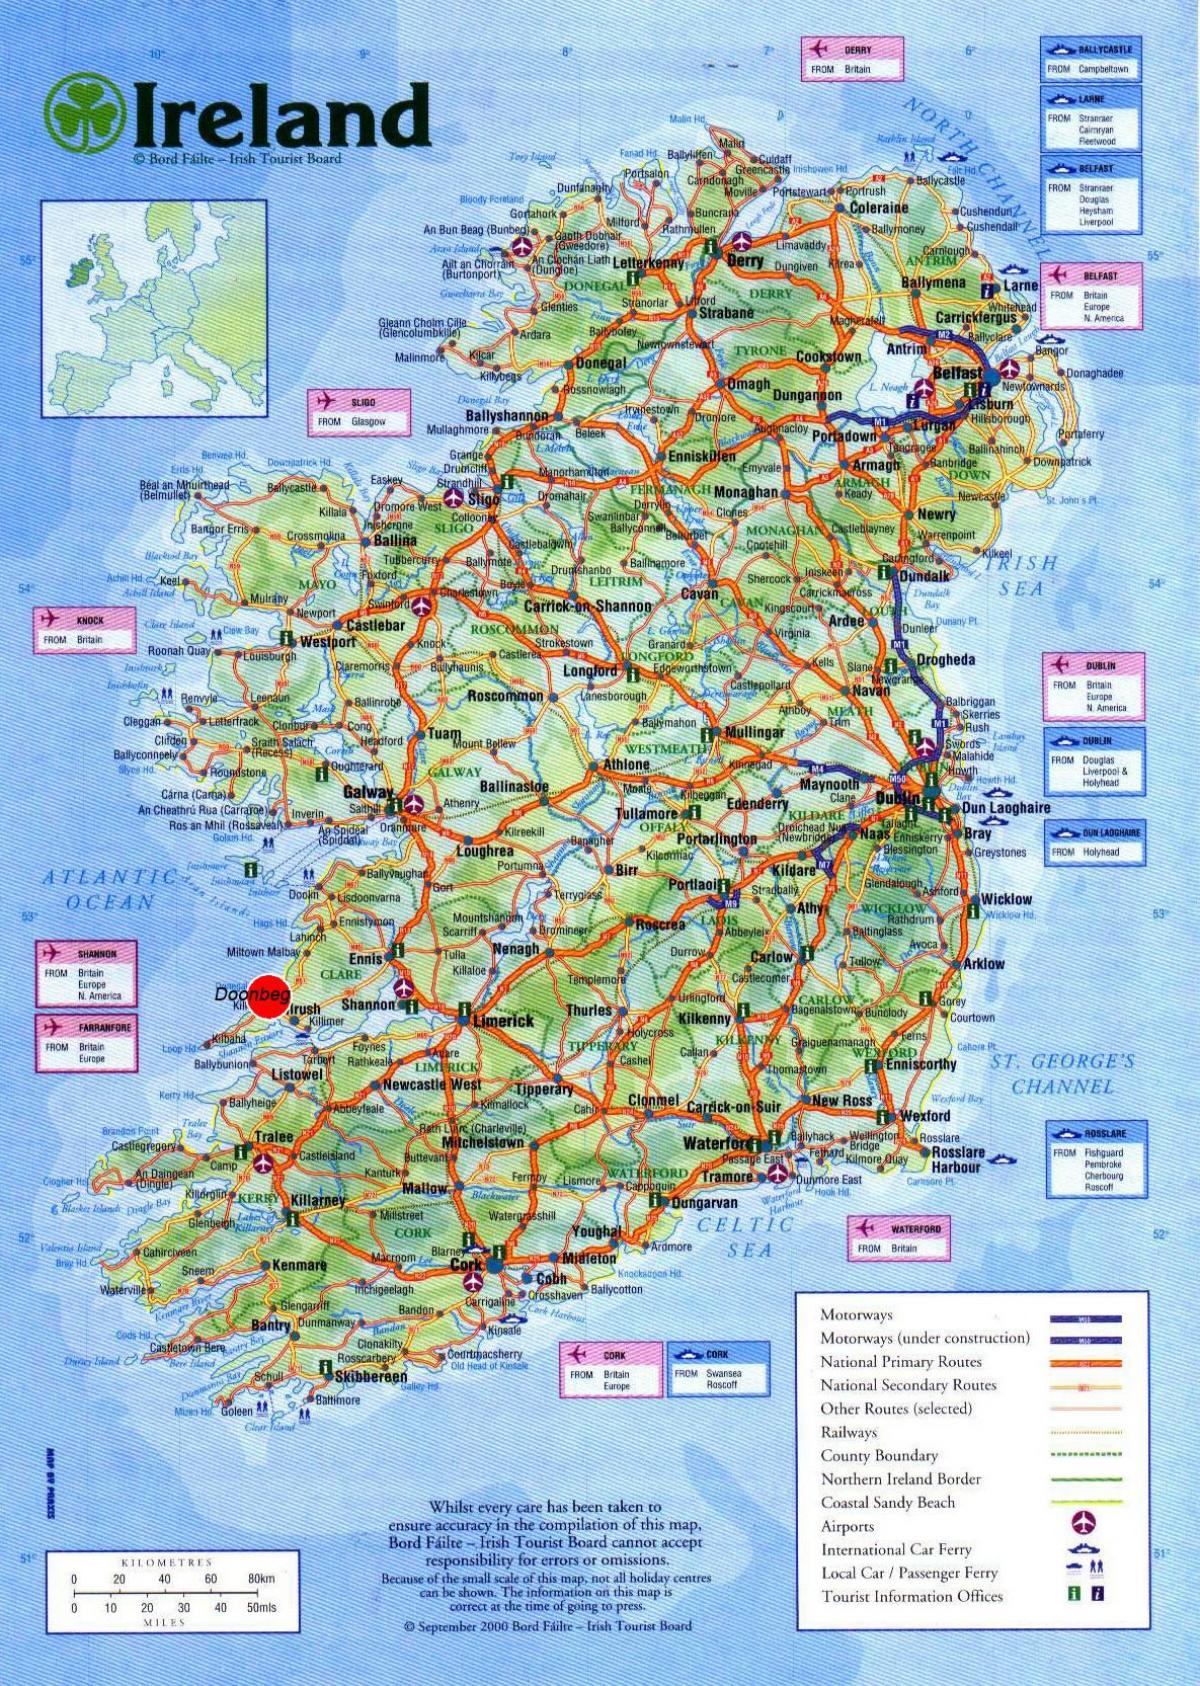 mapa da irlanda, mostrando atrações turísticas